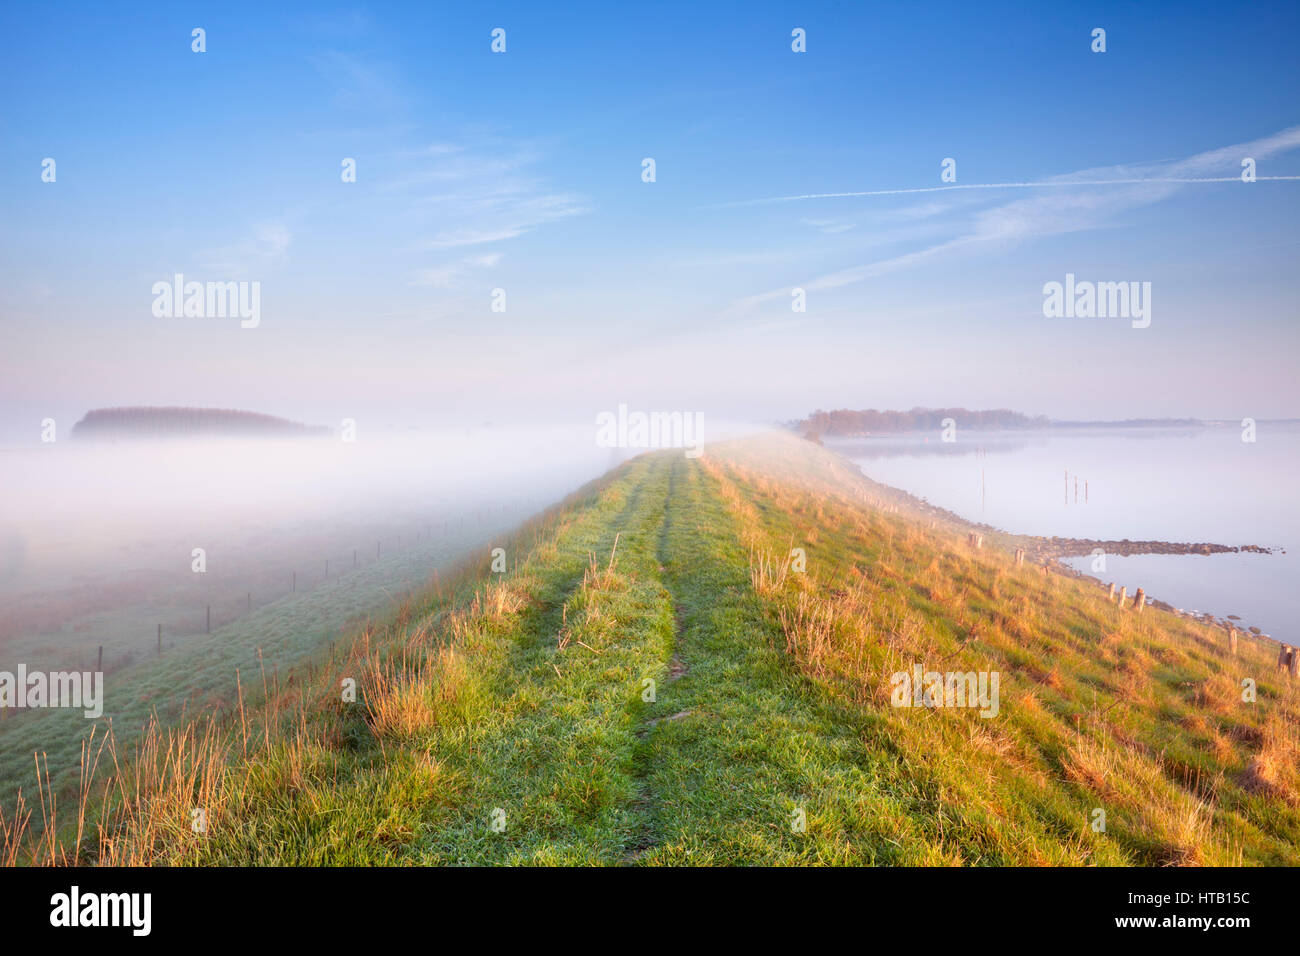 Un tipico paesaggio dei polder Olandesi con una diga lungo un lago. Fotografato alla Veerse Meer nella provincia di Zelanda su una mattinata nebbiosa. Foto Stock